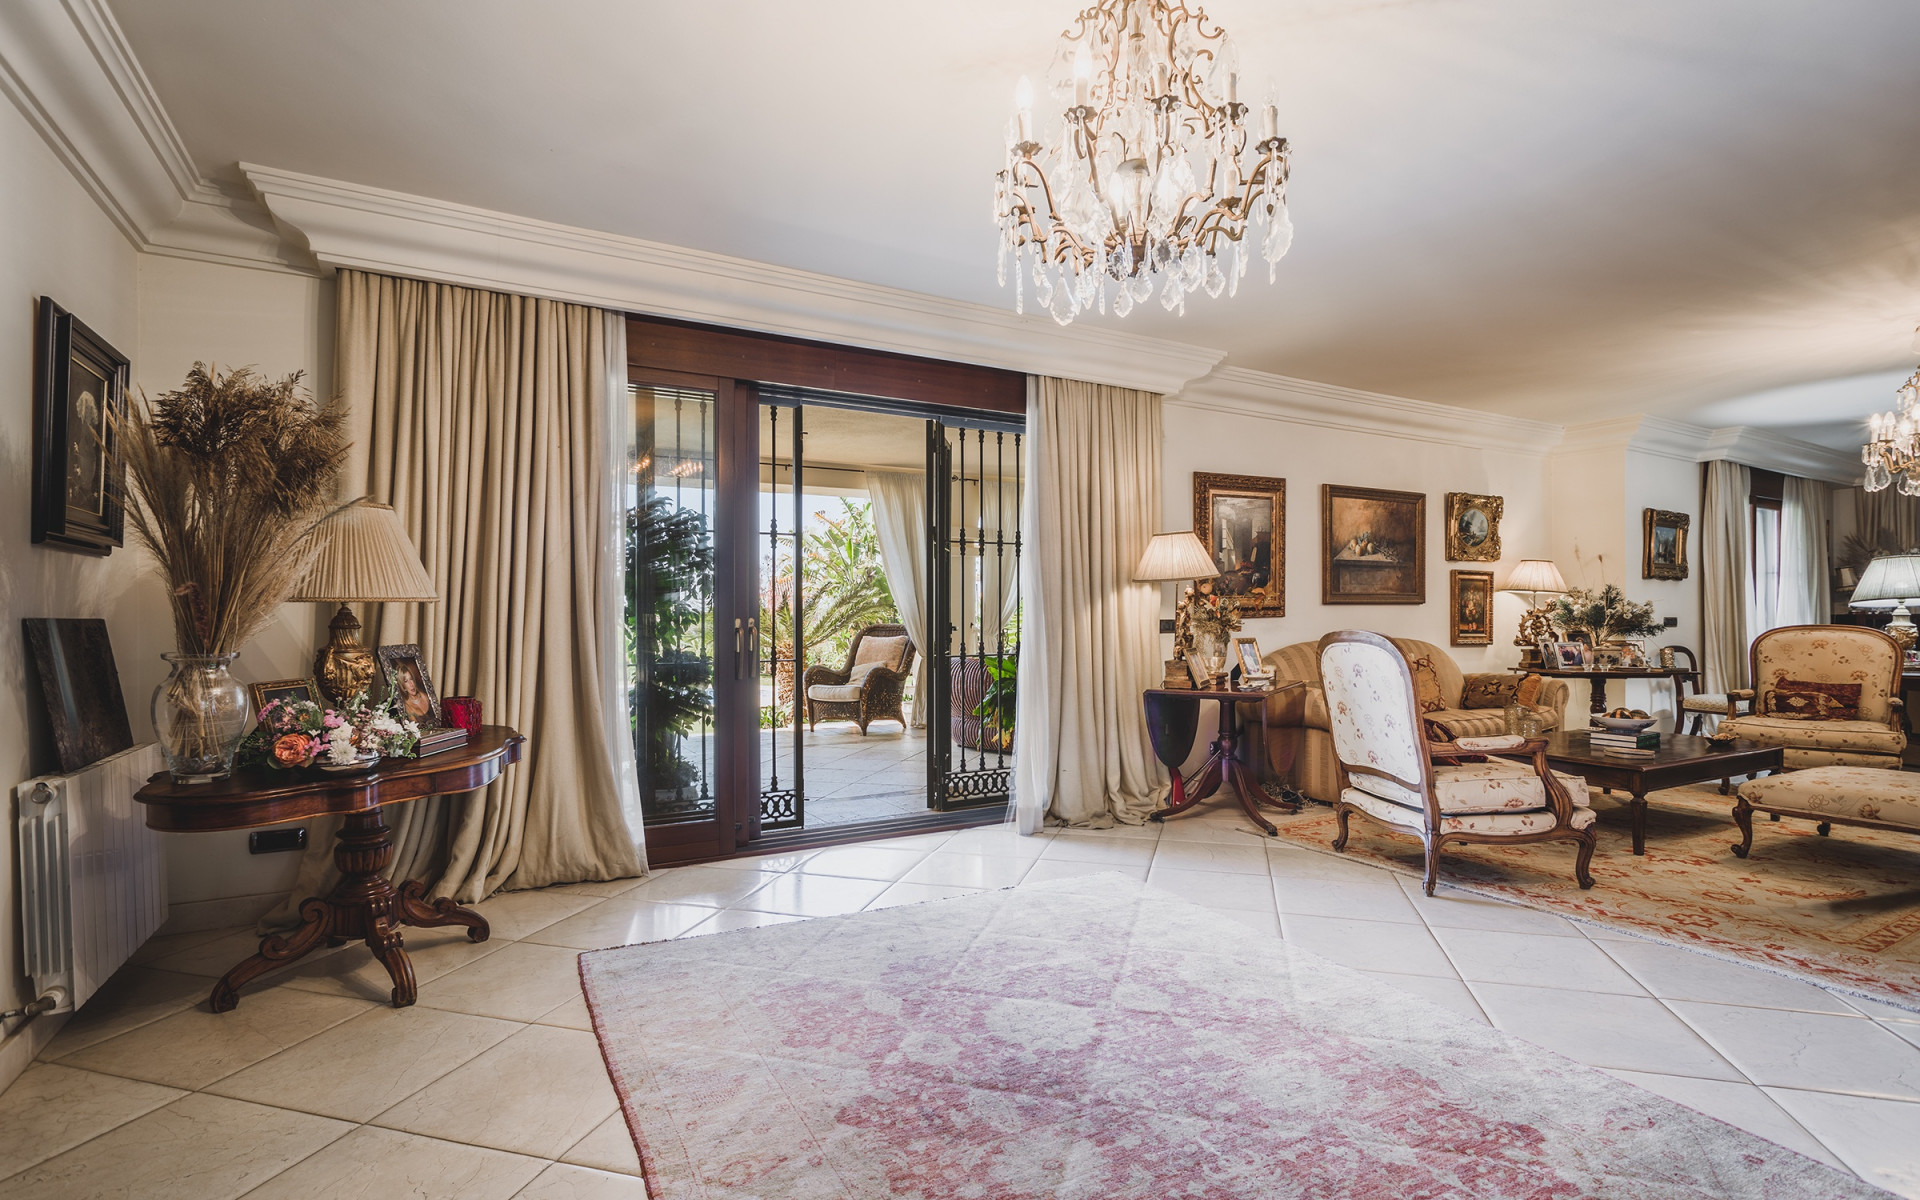 Elegant family villa with sea views near Marbella Center.